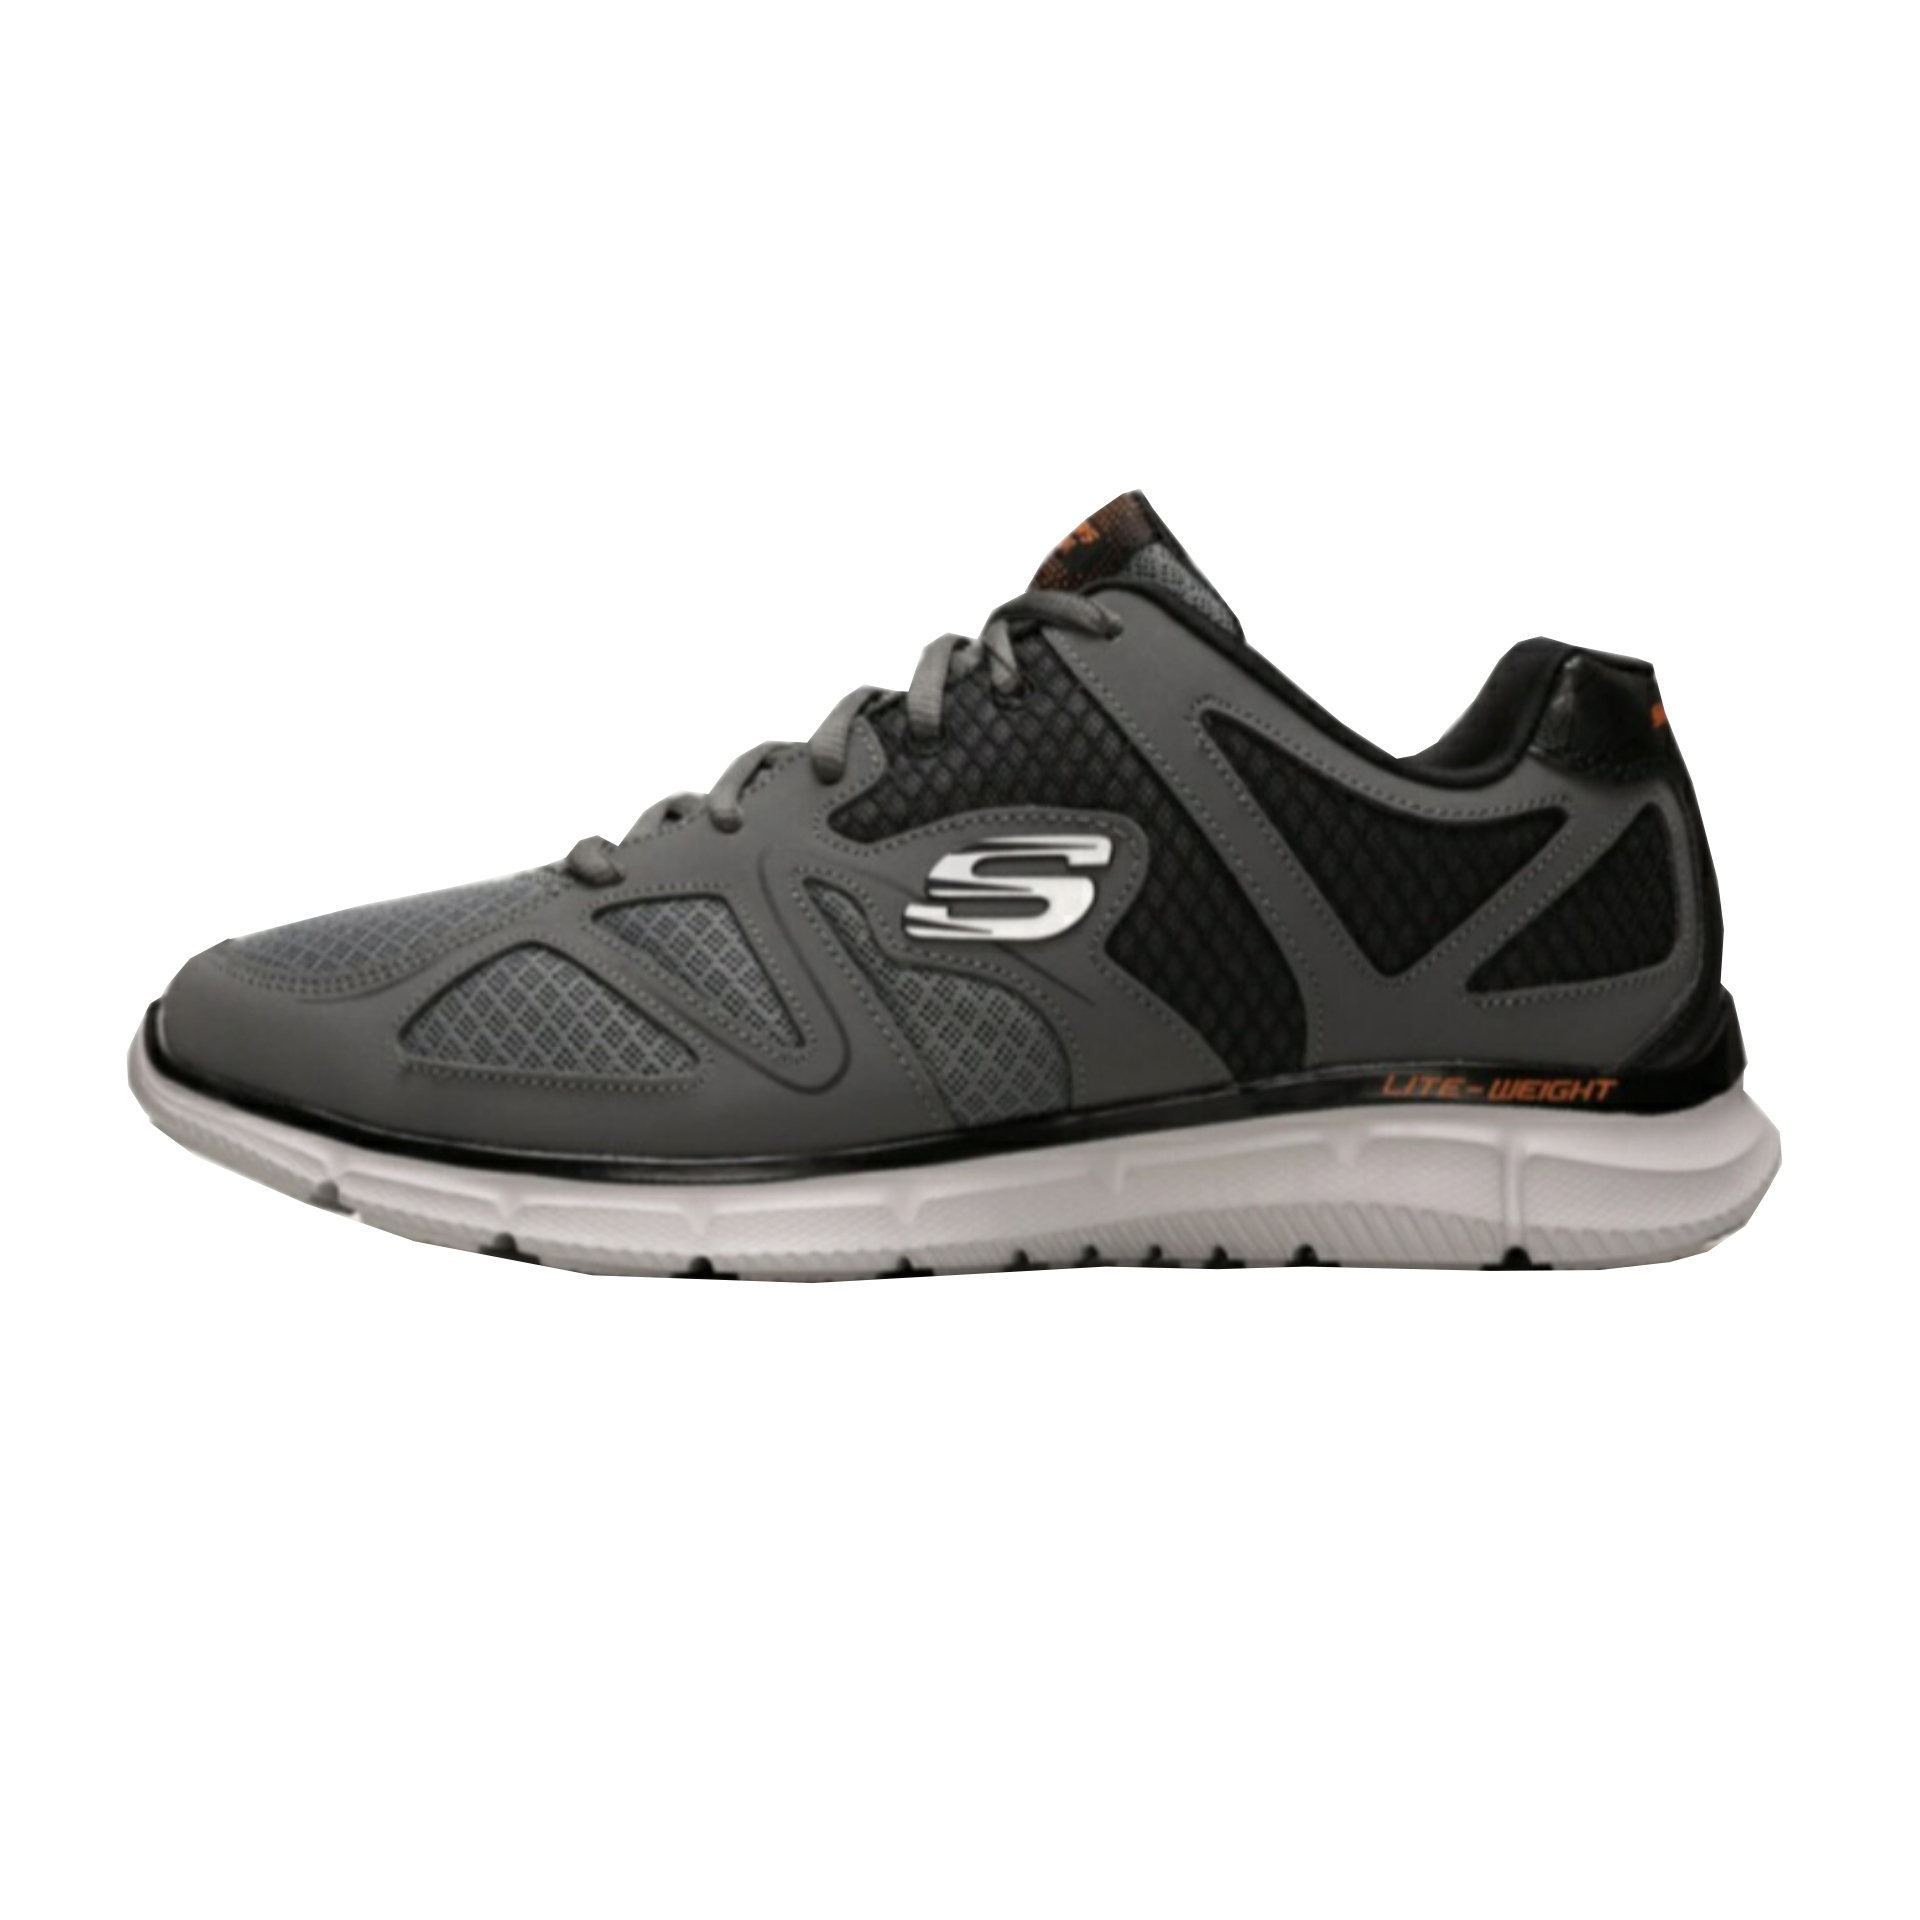 نکته خرید - قیمت روز کفش پیاده روی مردانه اسکچرز مدل 58350 CCOR خرید